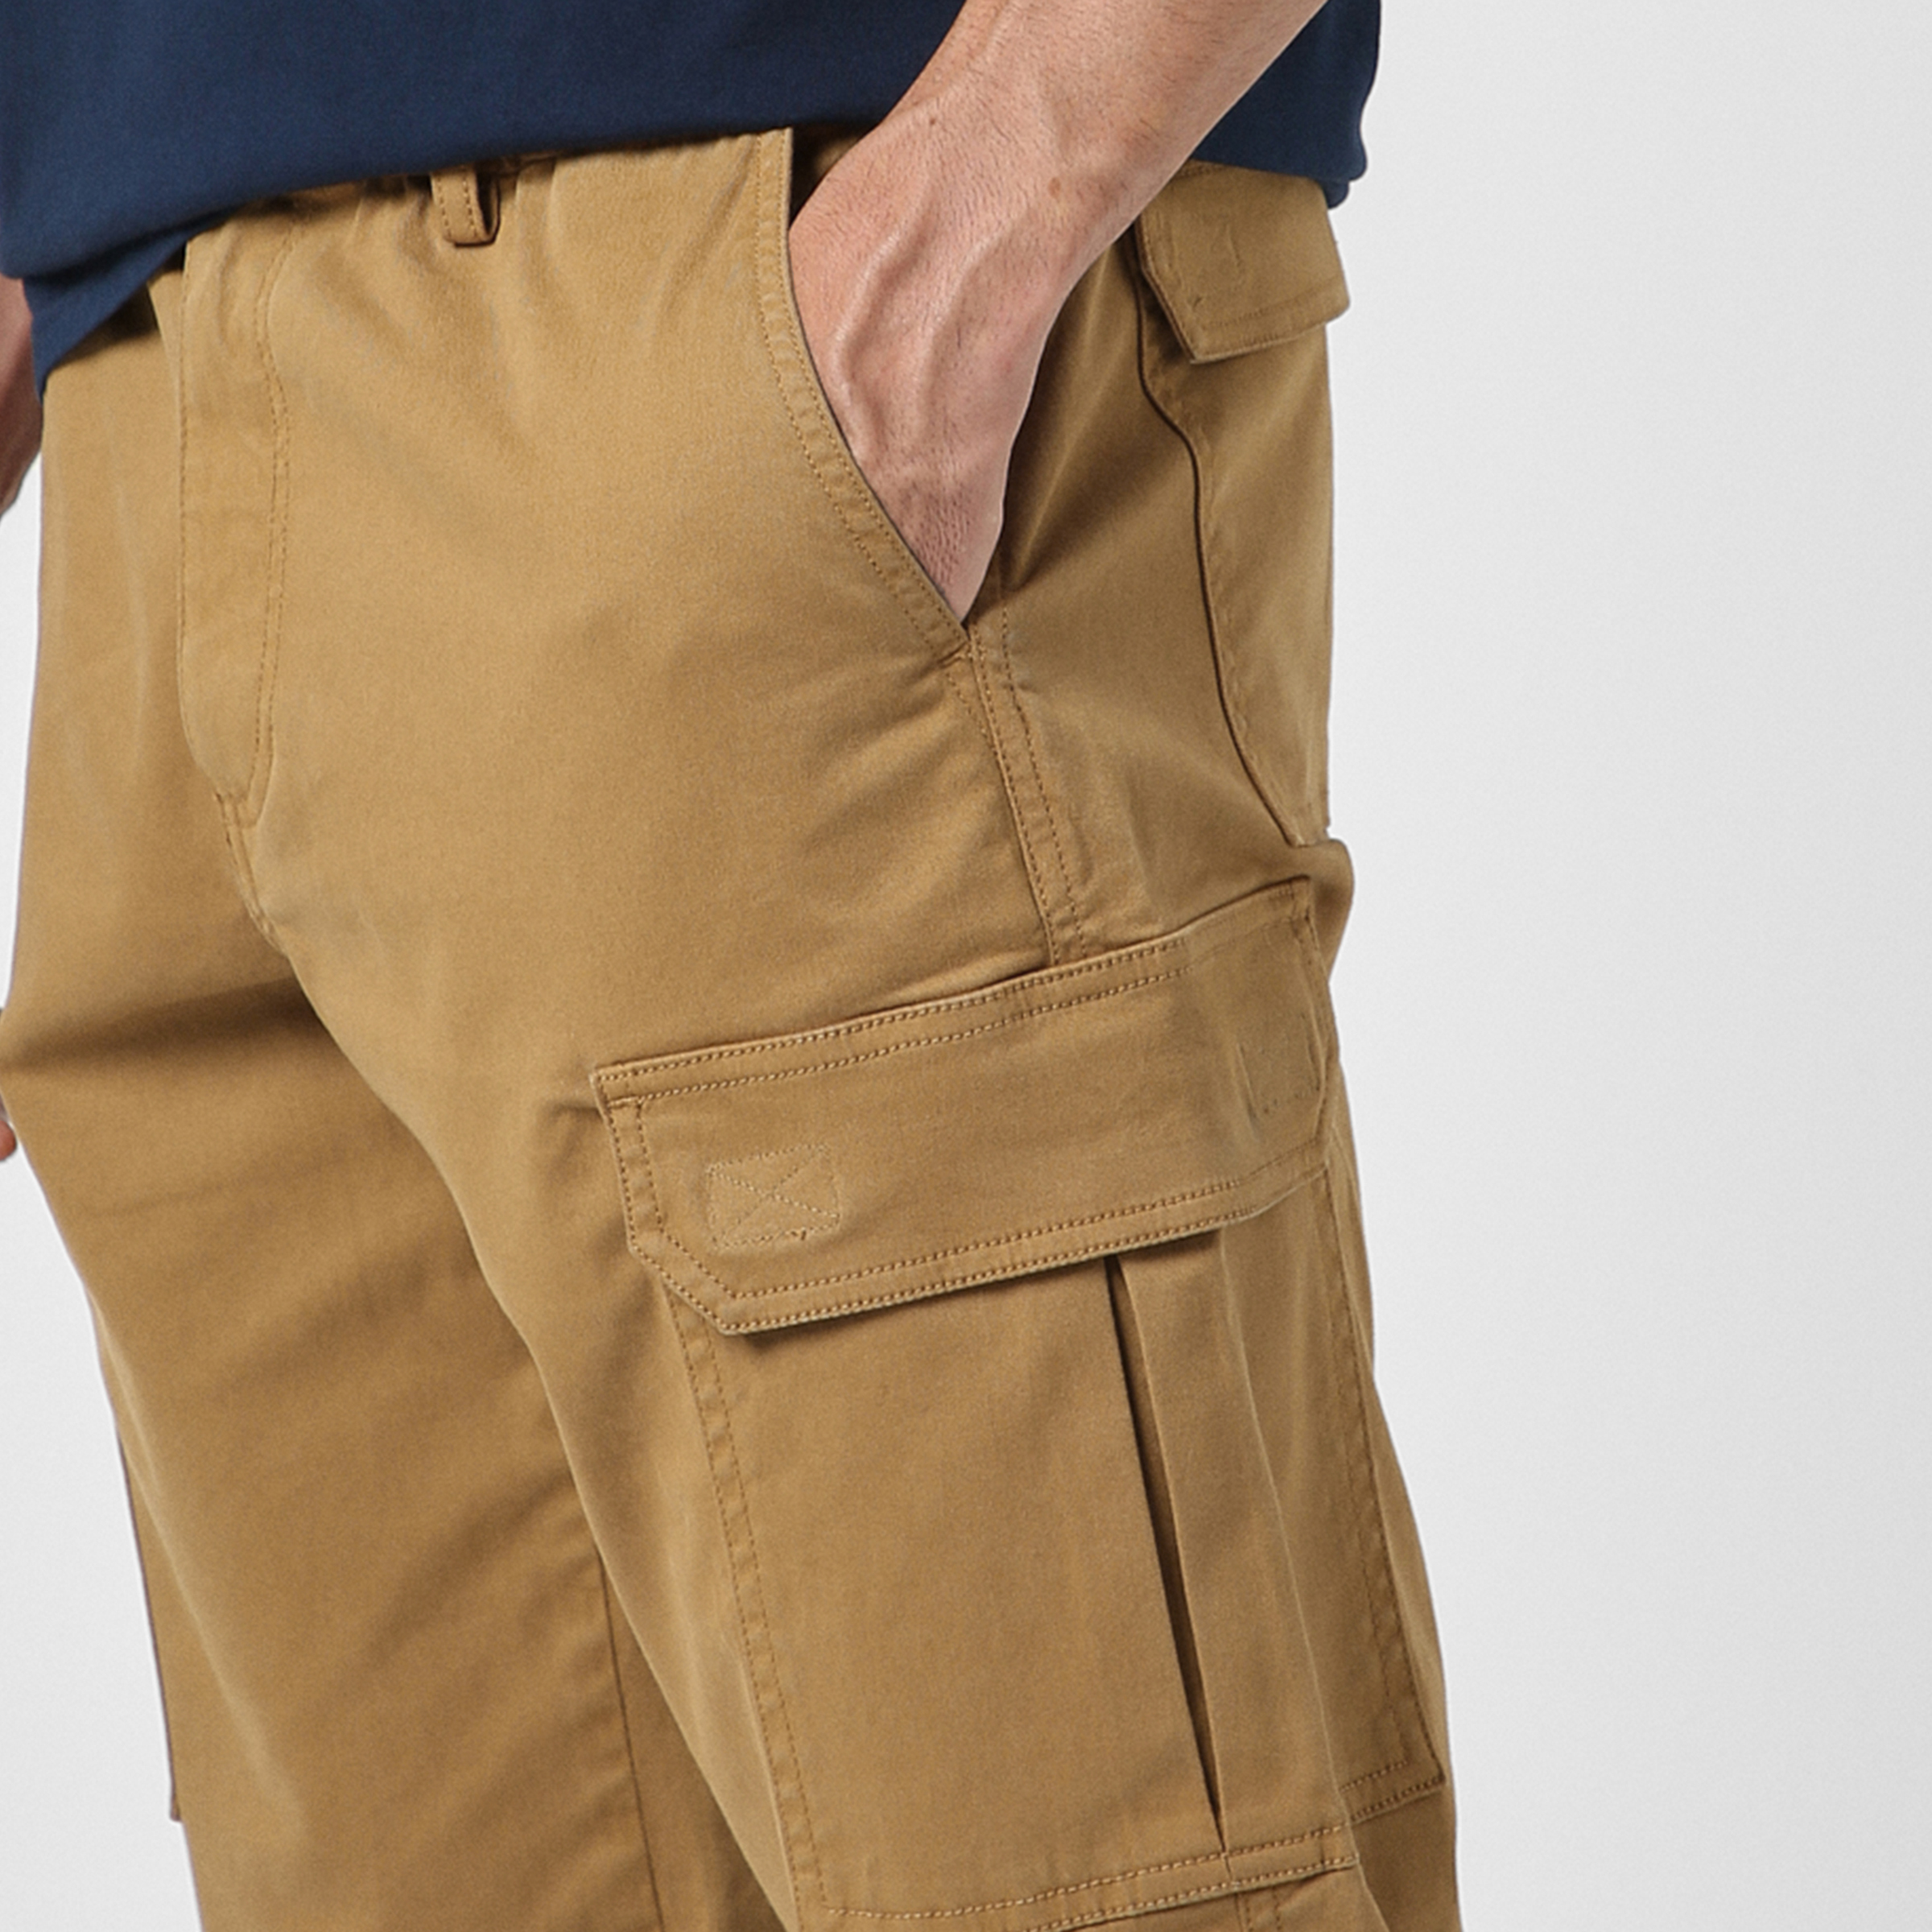 Stretch Cargo Pant British Khaki close up left velcro pocket